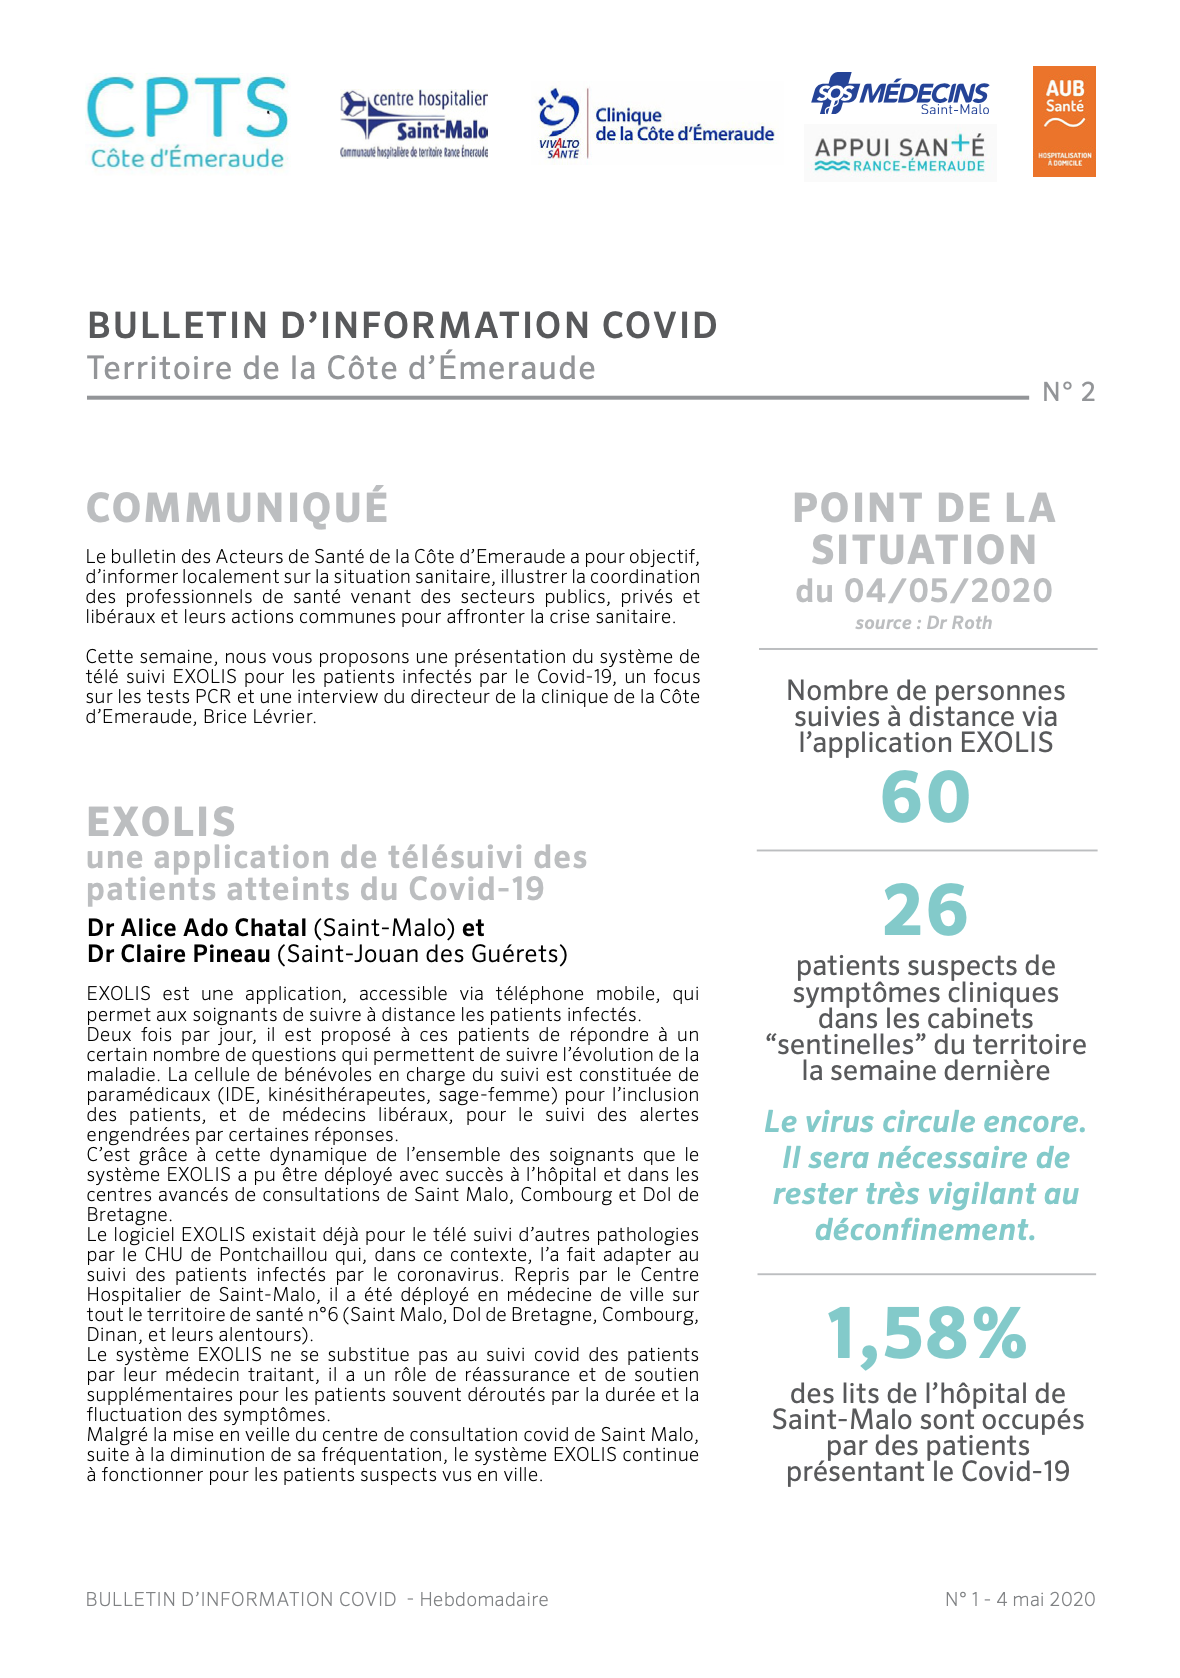 Le bulletin d'information COVID du 4 mai 2020 sur le territoire de la Côte d'Émeraude 